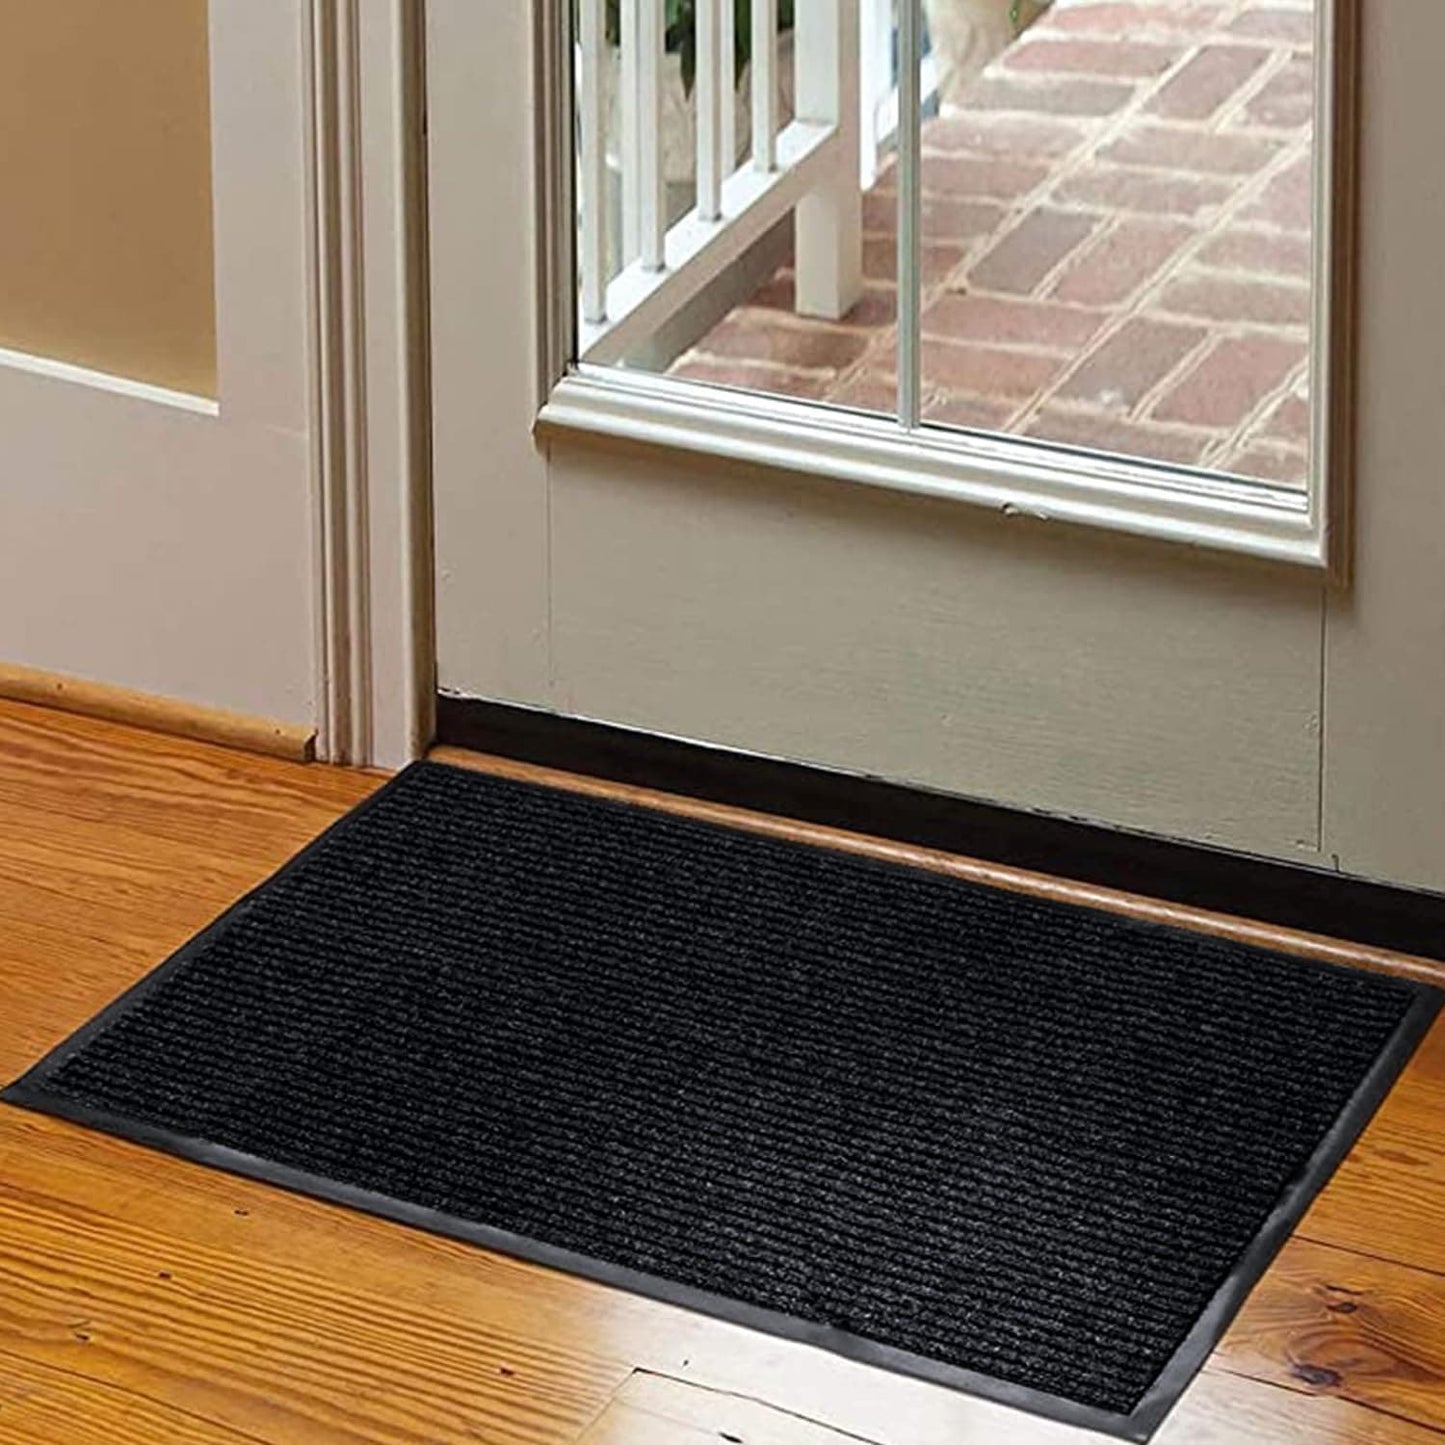 Heavy Duty Entrance Mats, Indoor and Outdoor Rubber Door Mat, Easy Clean Waterproof Anti-Slip Floor Doormat Rug, Low Profile Entrance Shoe Scraper for Entryway, Patio, Garage